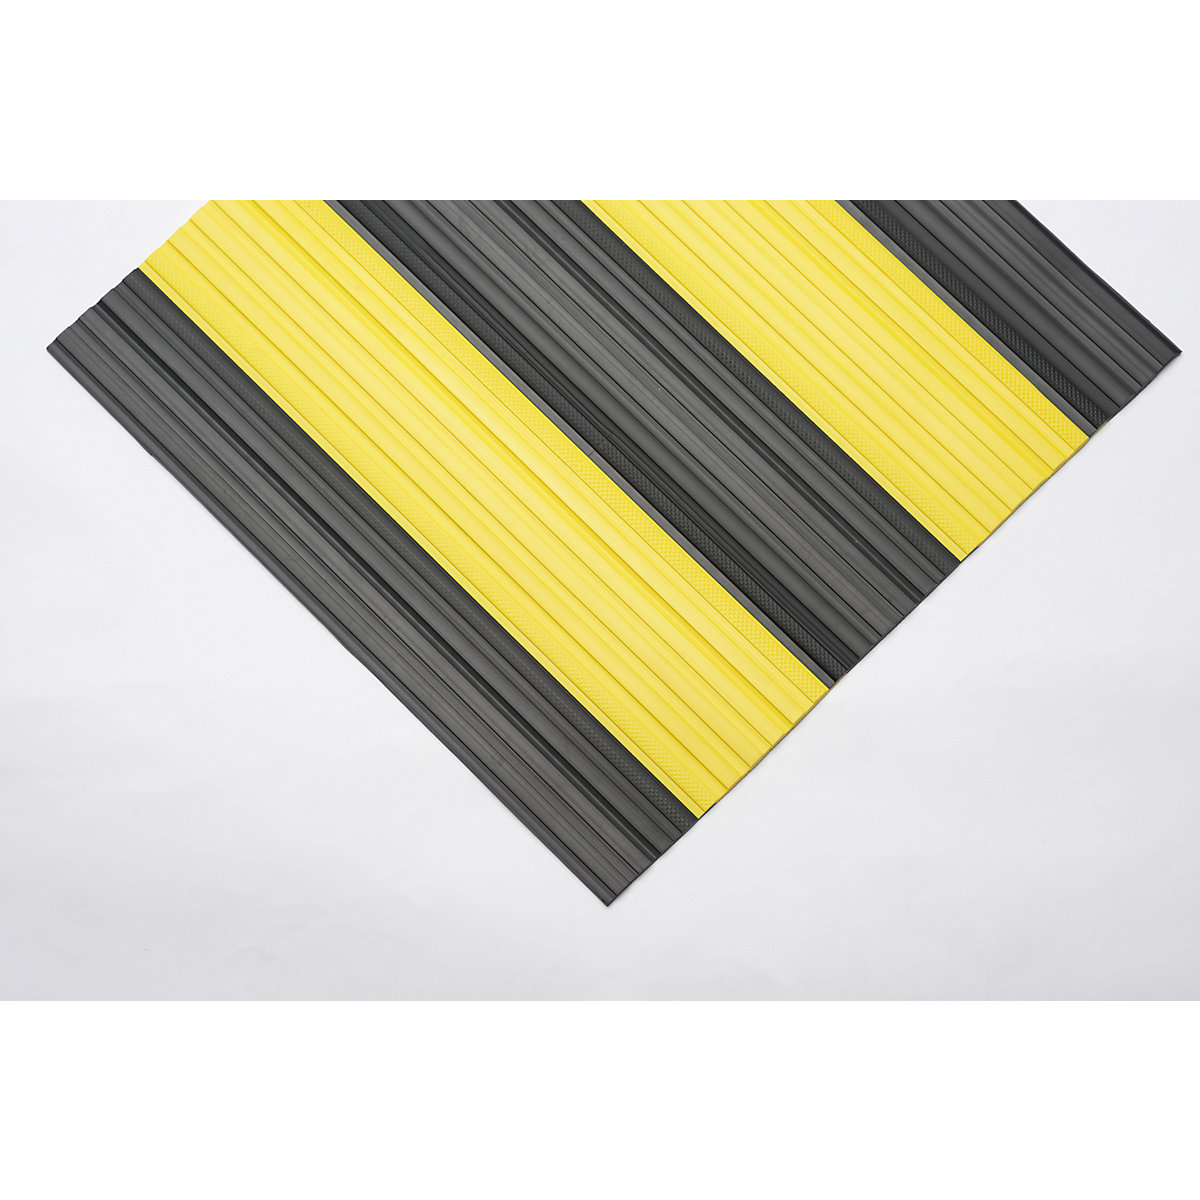 Mekana PVC staza, sa zatvorenom površinom, rola 10 m, u crno-žutoj boji, širina 1000 mm-8